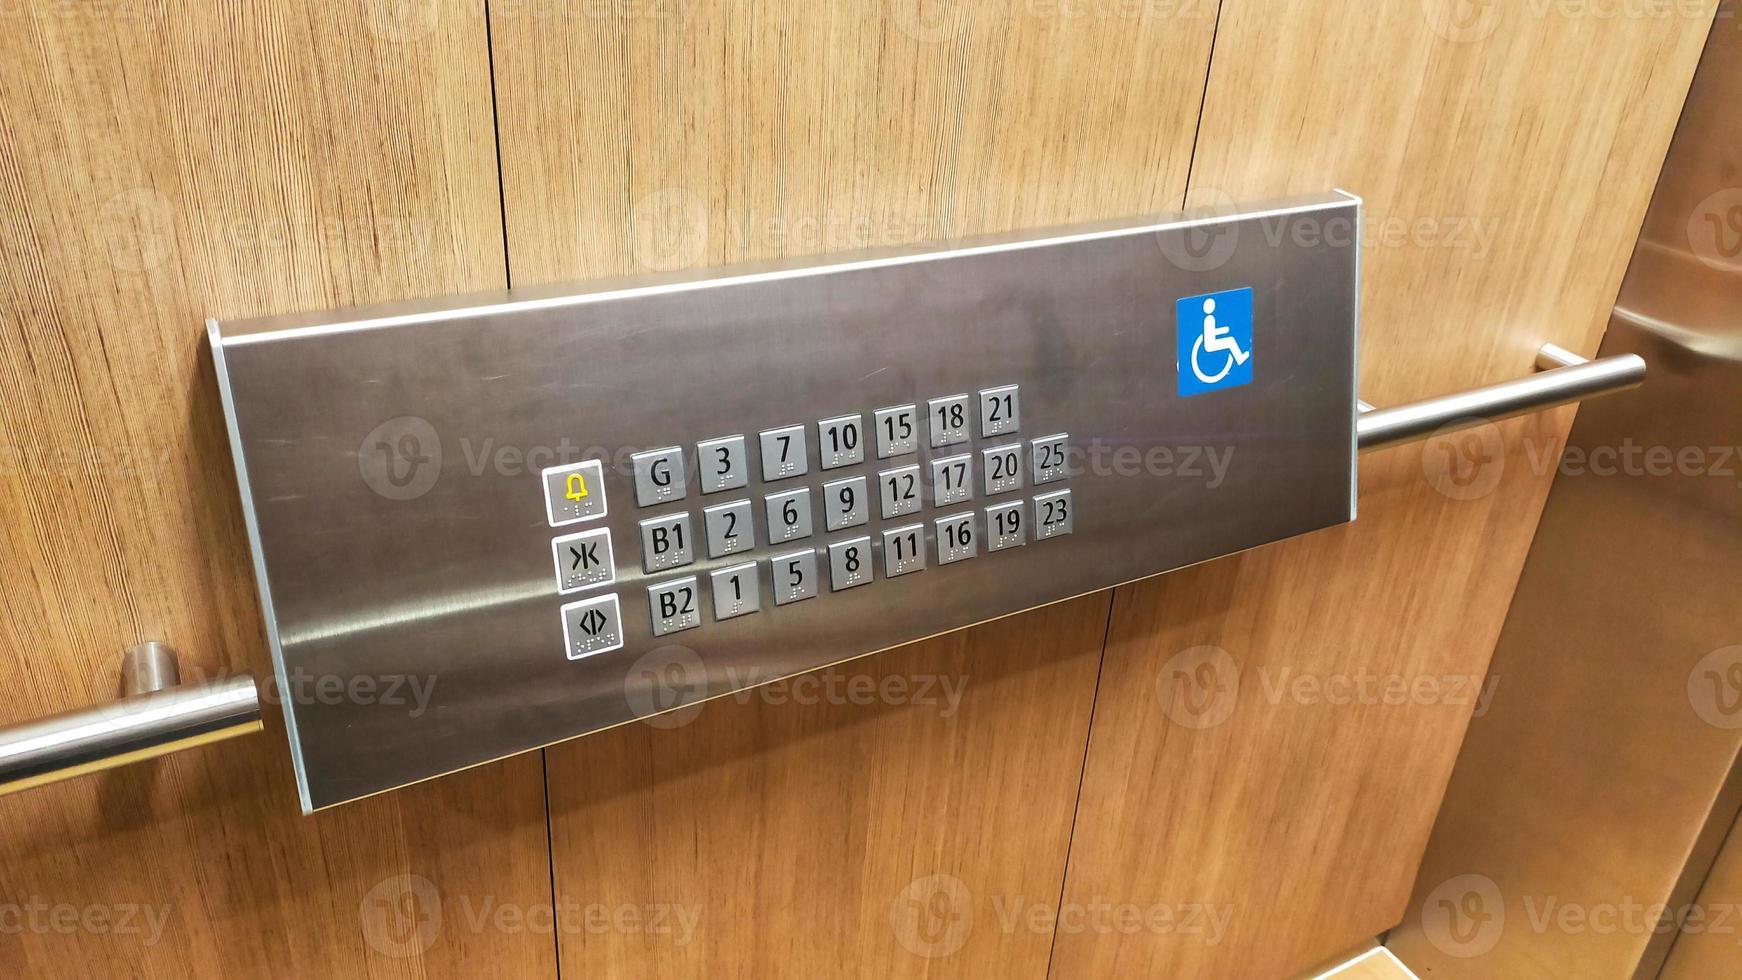 il Disabilitato ascensore pulsante o pannello con braille codice di il ascensore. foto